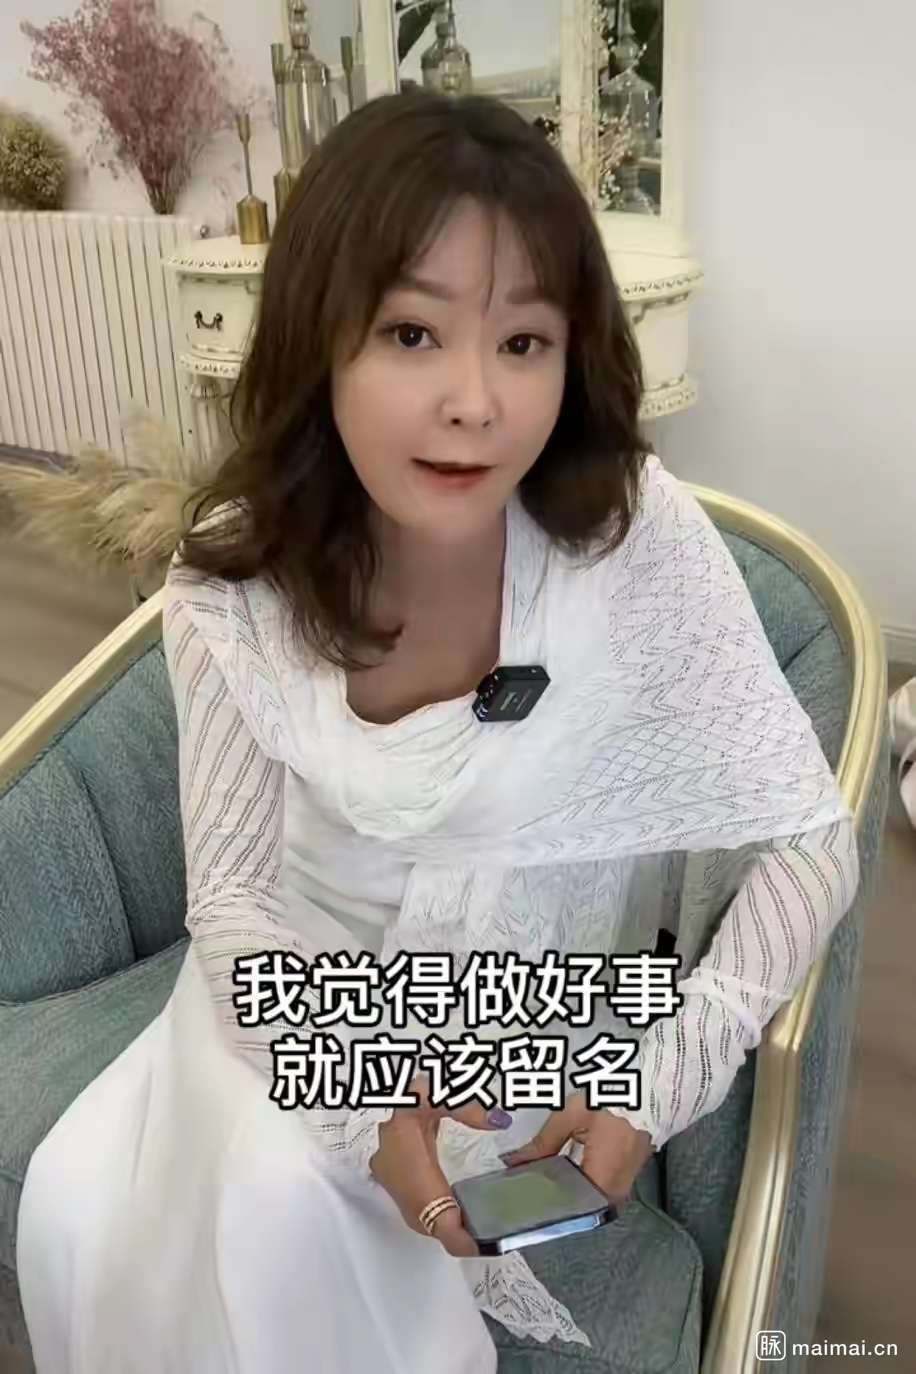 央视主持人王小骞在社交平台上更新了一则视频,分享了她最近的生活